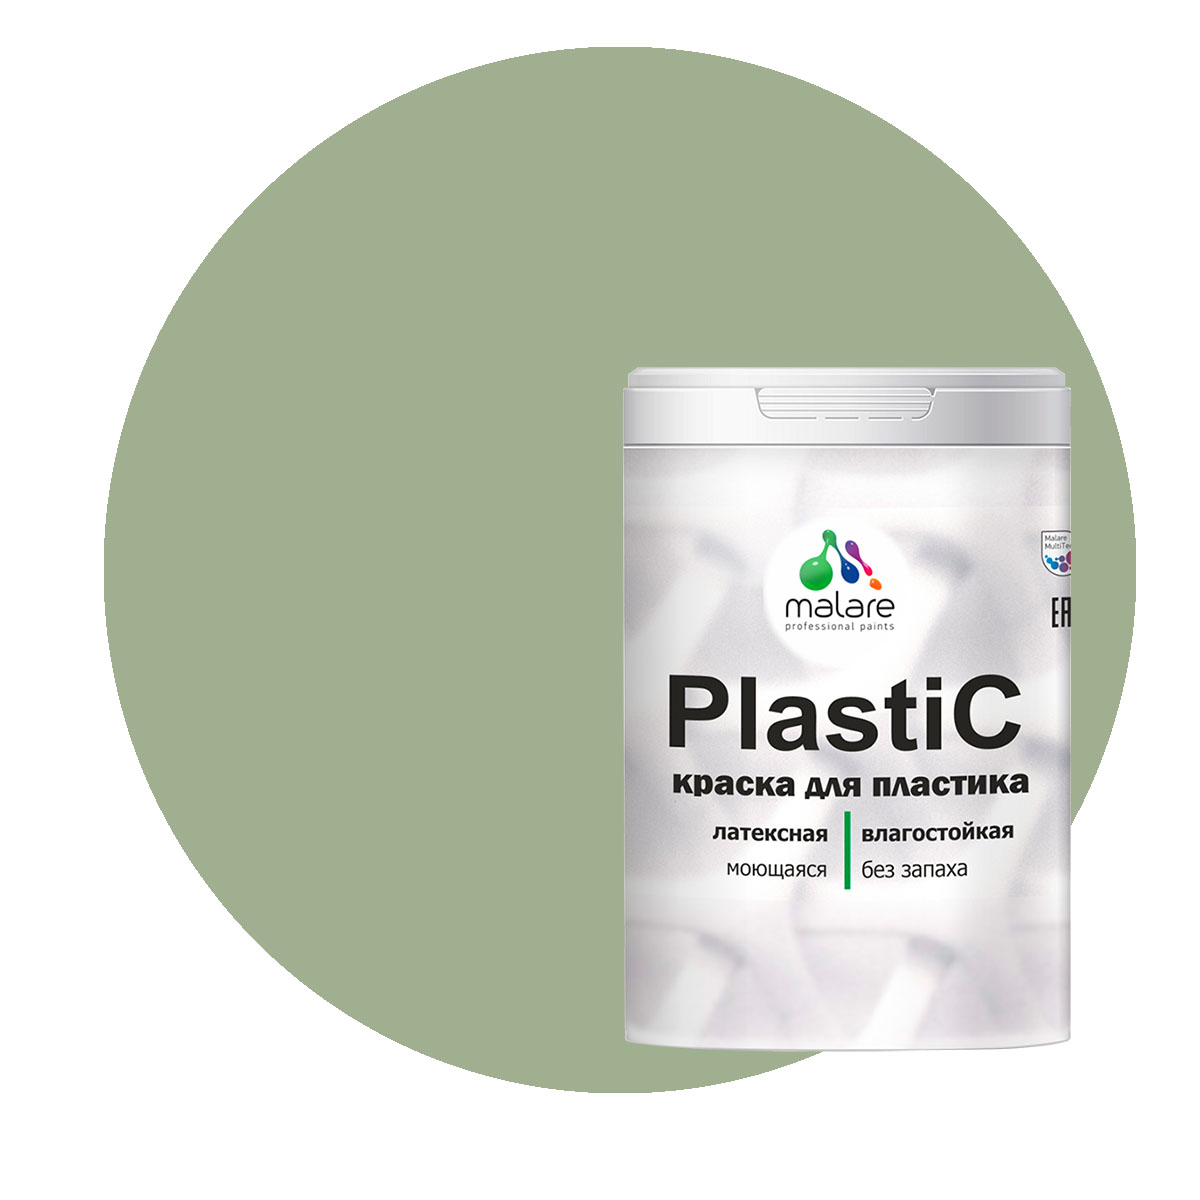 Краска Malare PlastiC для пластика, ПВХ, для сайдинга, лиственный зеленый, 2 кг.